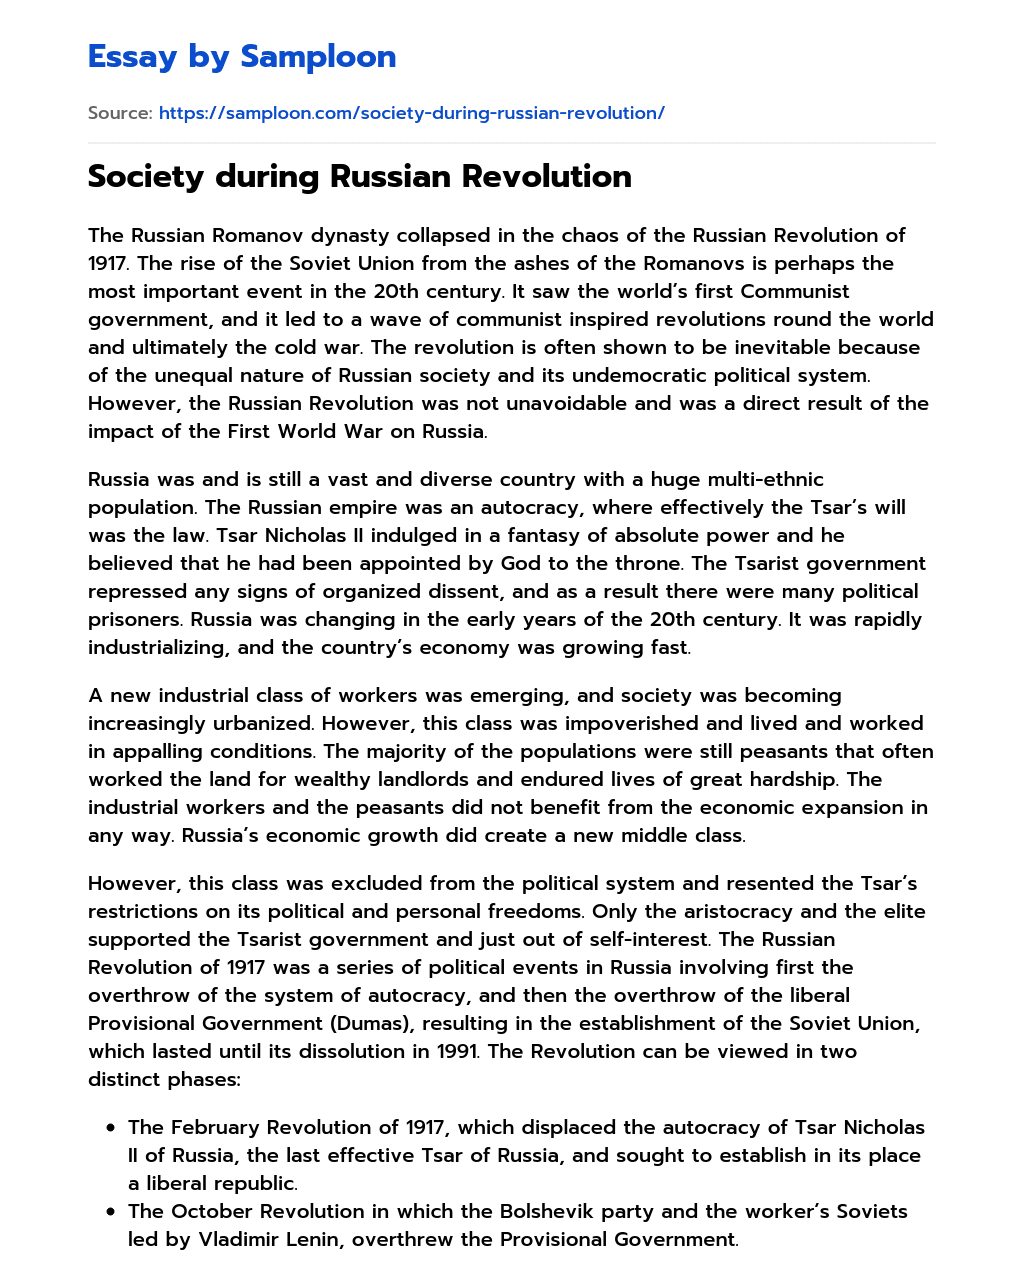 Society during Russian Revolution essay